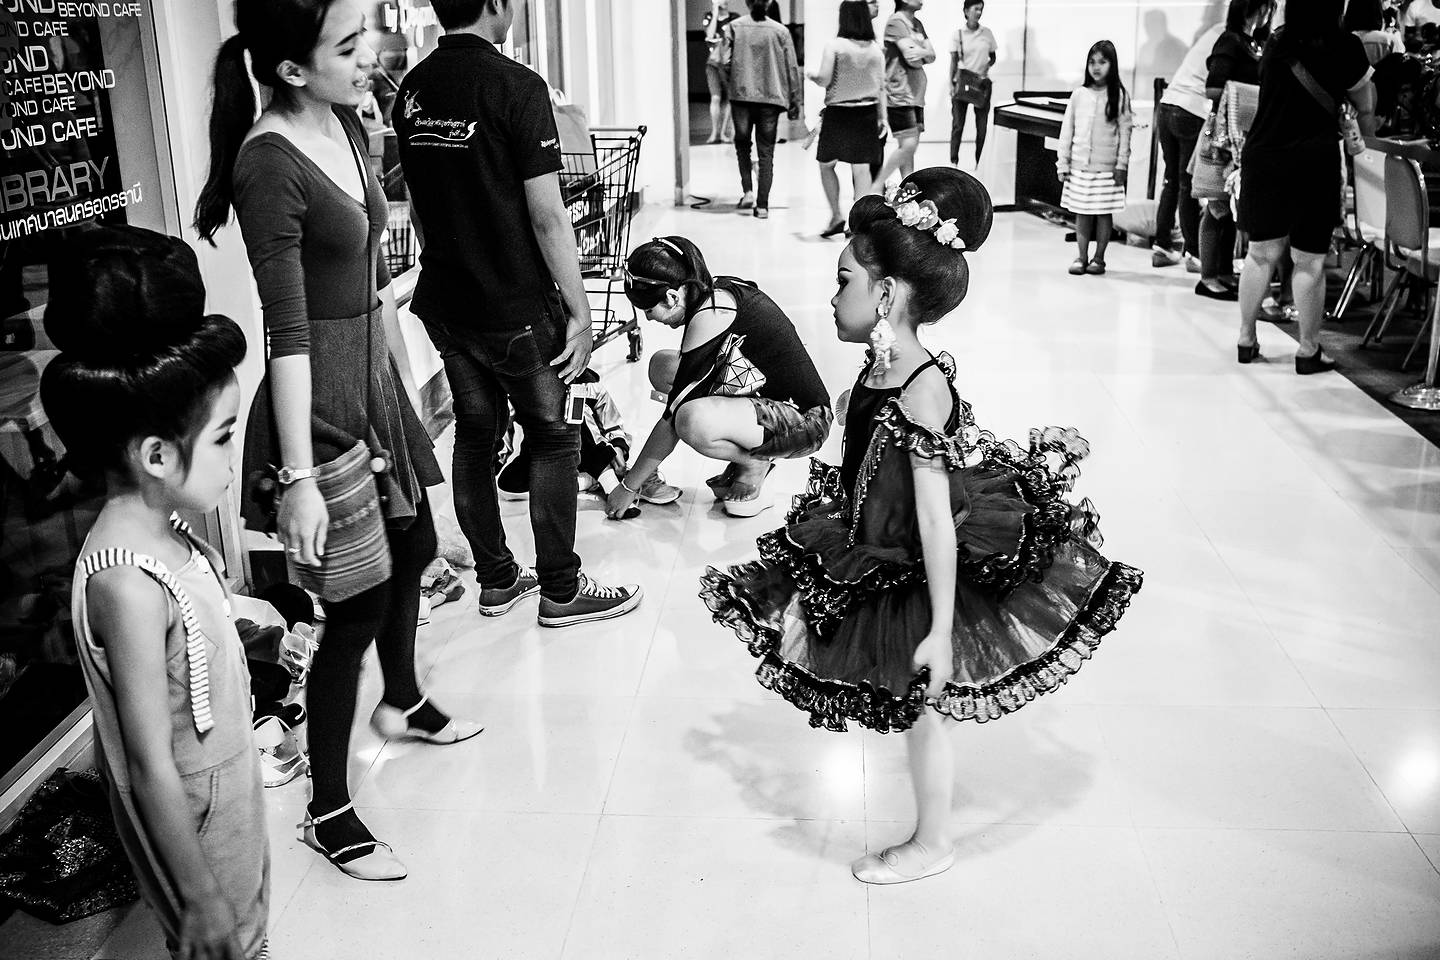 Świąteczny "Mam talent" dla dzieci w centrum handlowym Central Plaza (Loi Krathong 2015)